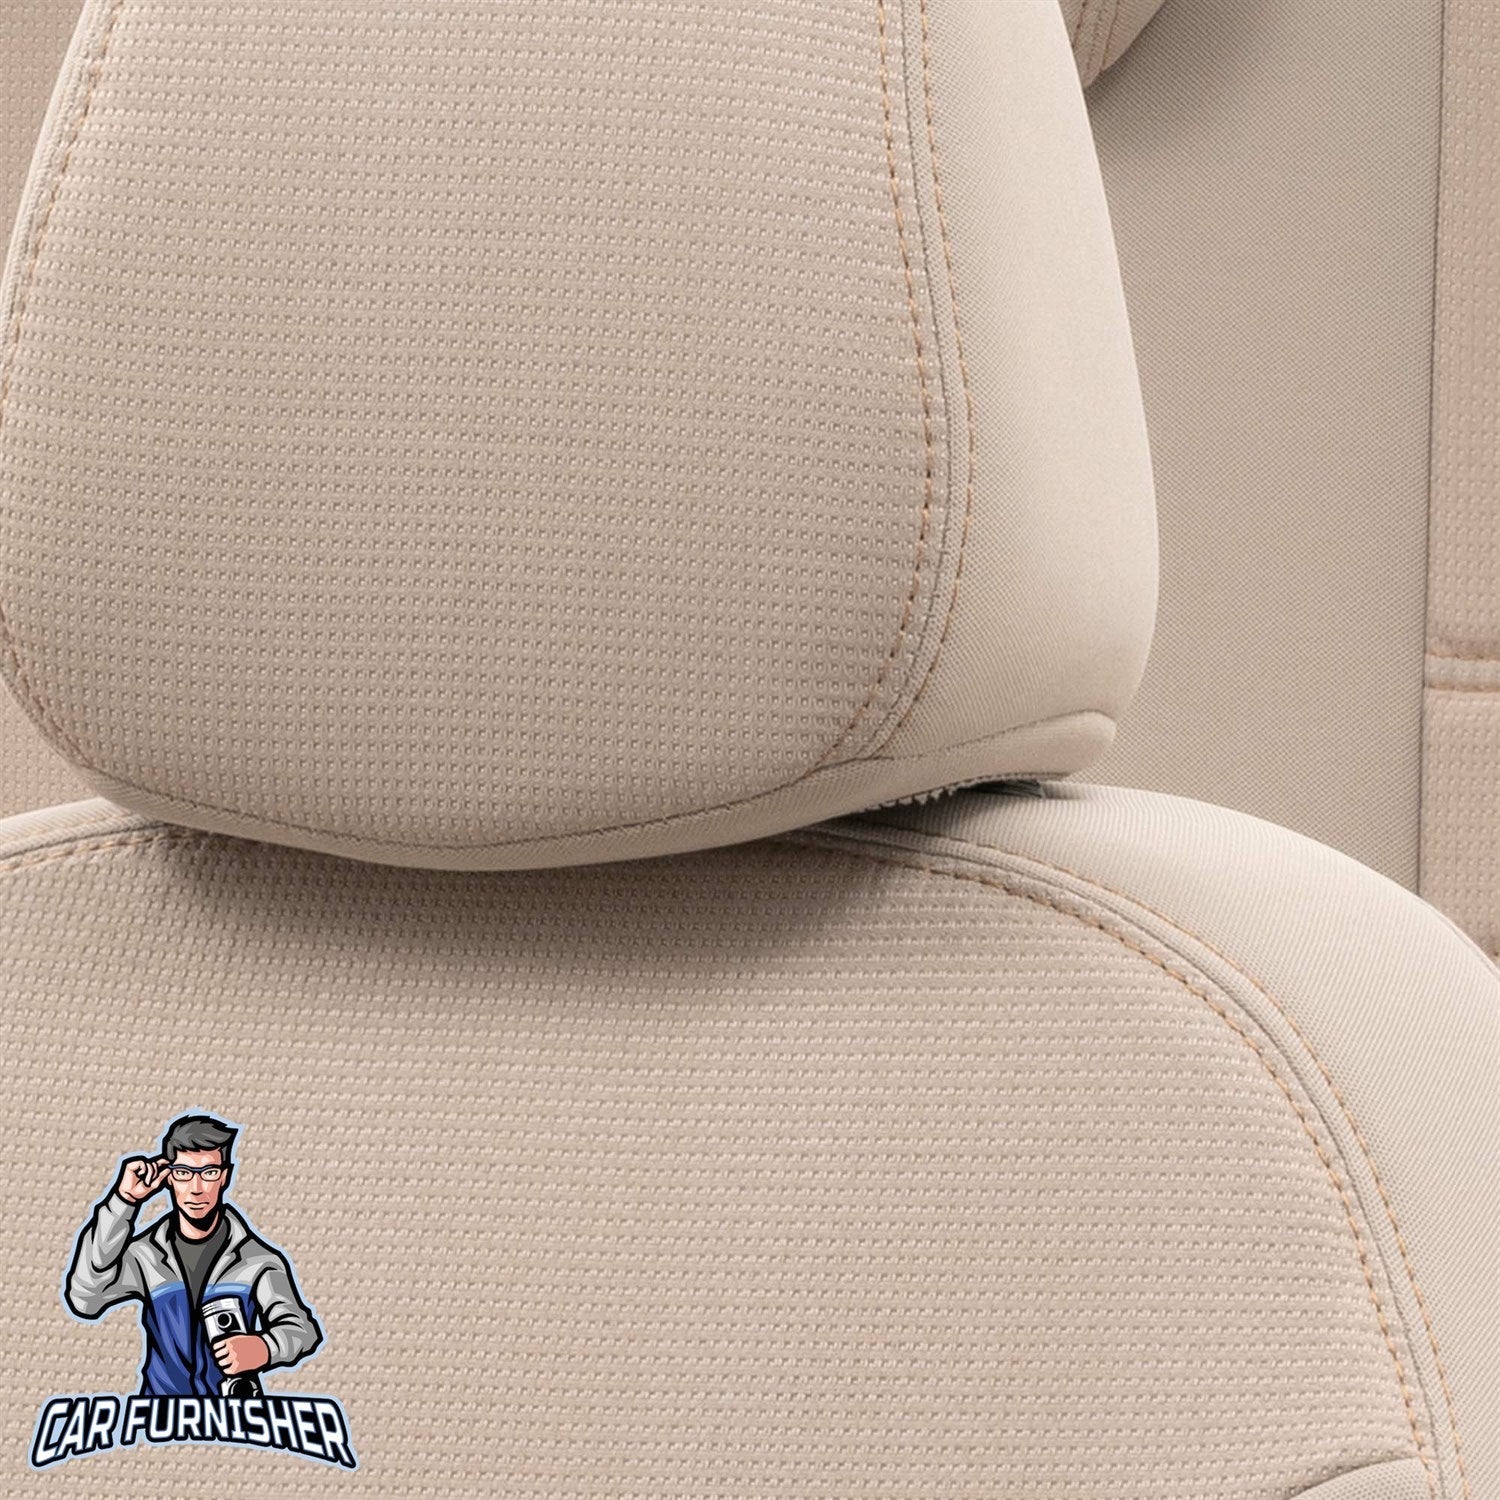 Renault Captur Seat Covers Original Jacquard Design Beige Jacquard Fabric